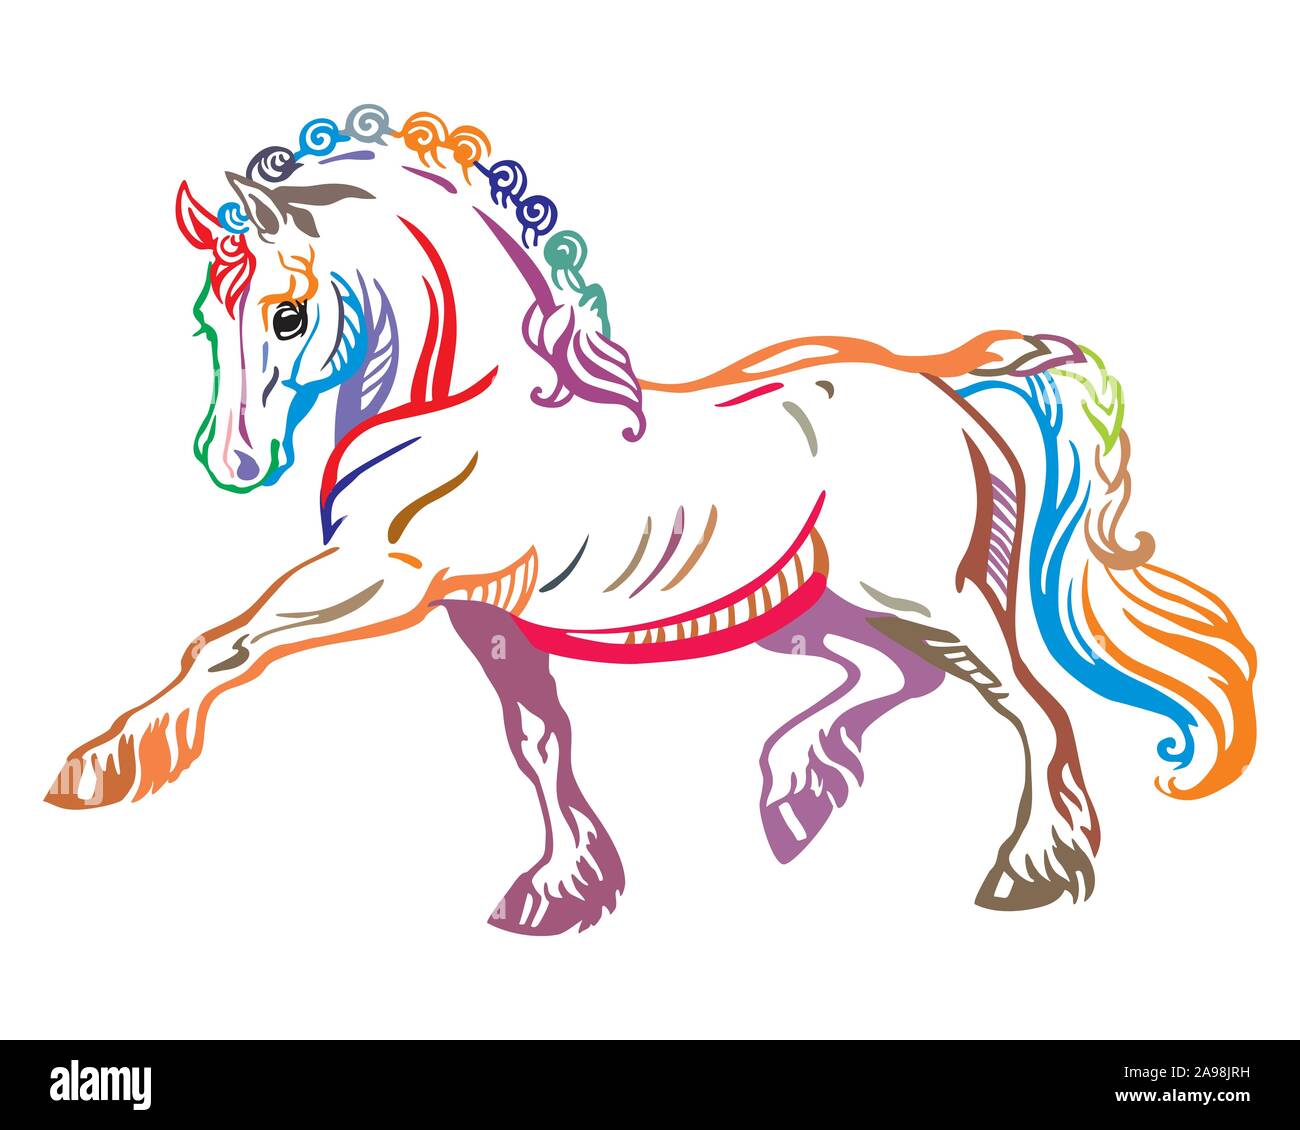 Bunt dekorativ Portrait von Pony Schritte im Profil, Ausbildung Pony. Vektor isoliert Abbildung in verschiedenen Farben auf weißem Hintergrund. Bild für Stock Vektor